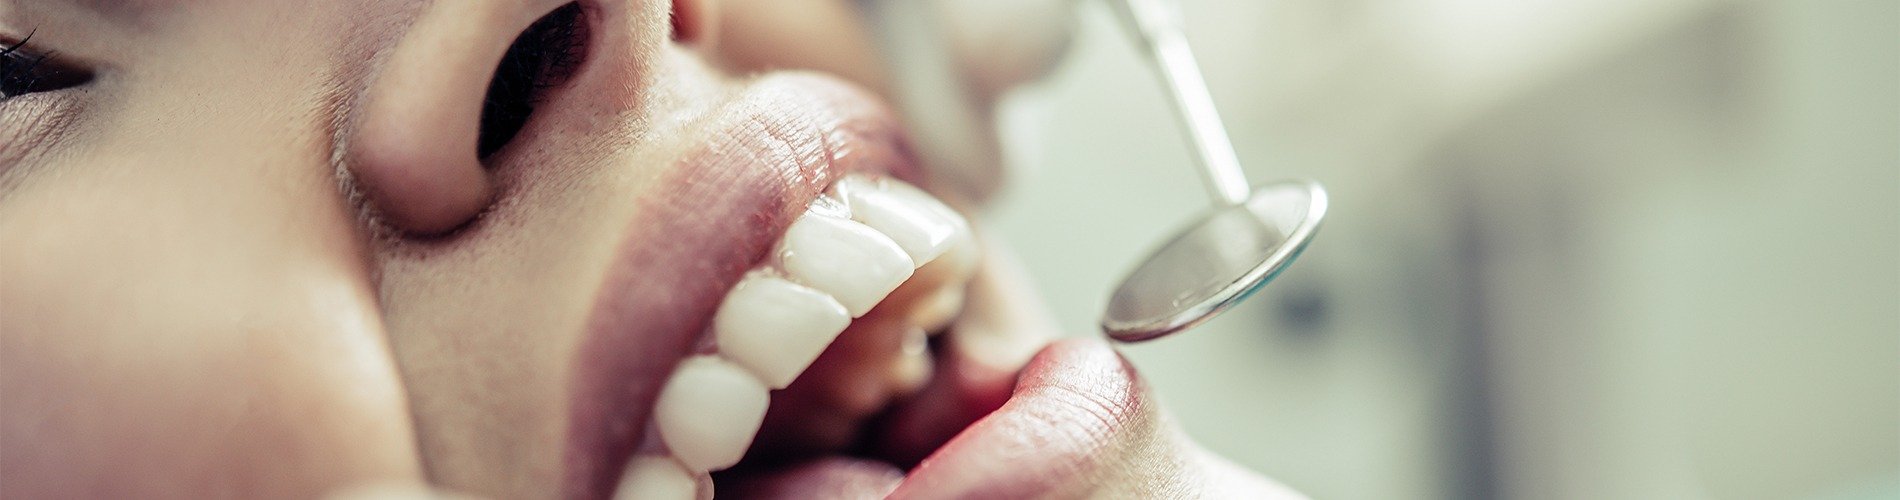 ¿Cómo ha afectado la crisis en la estética dental?